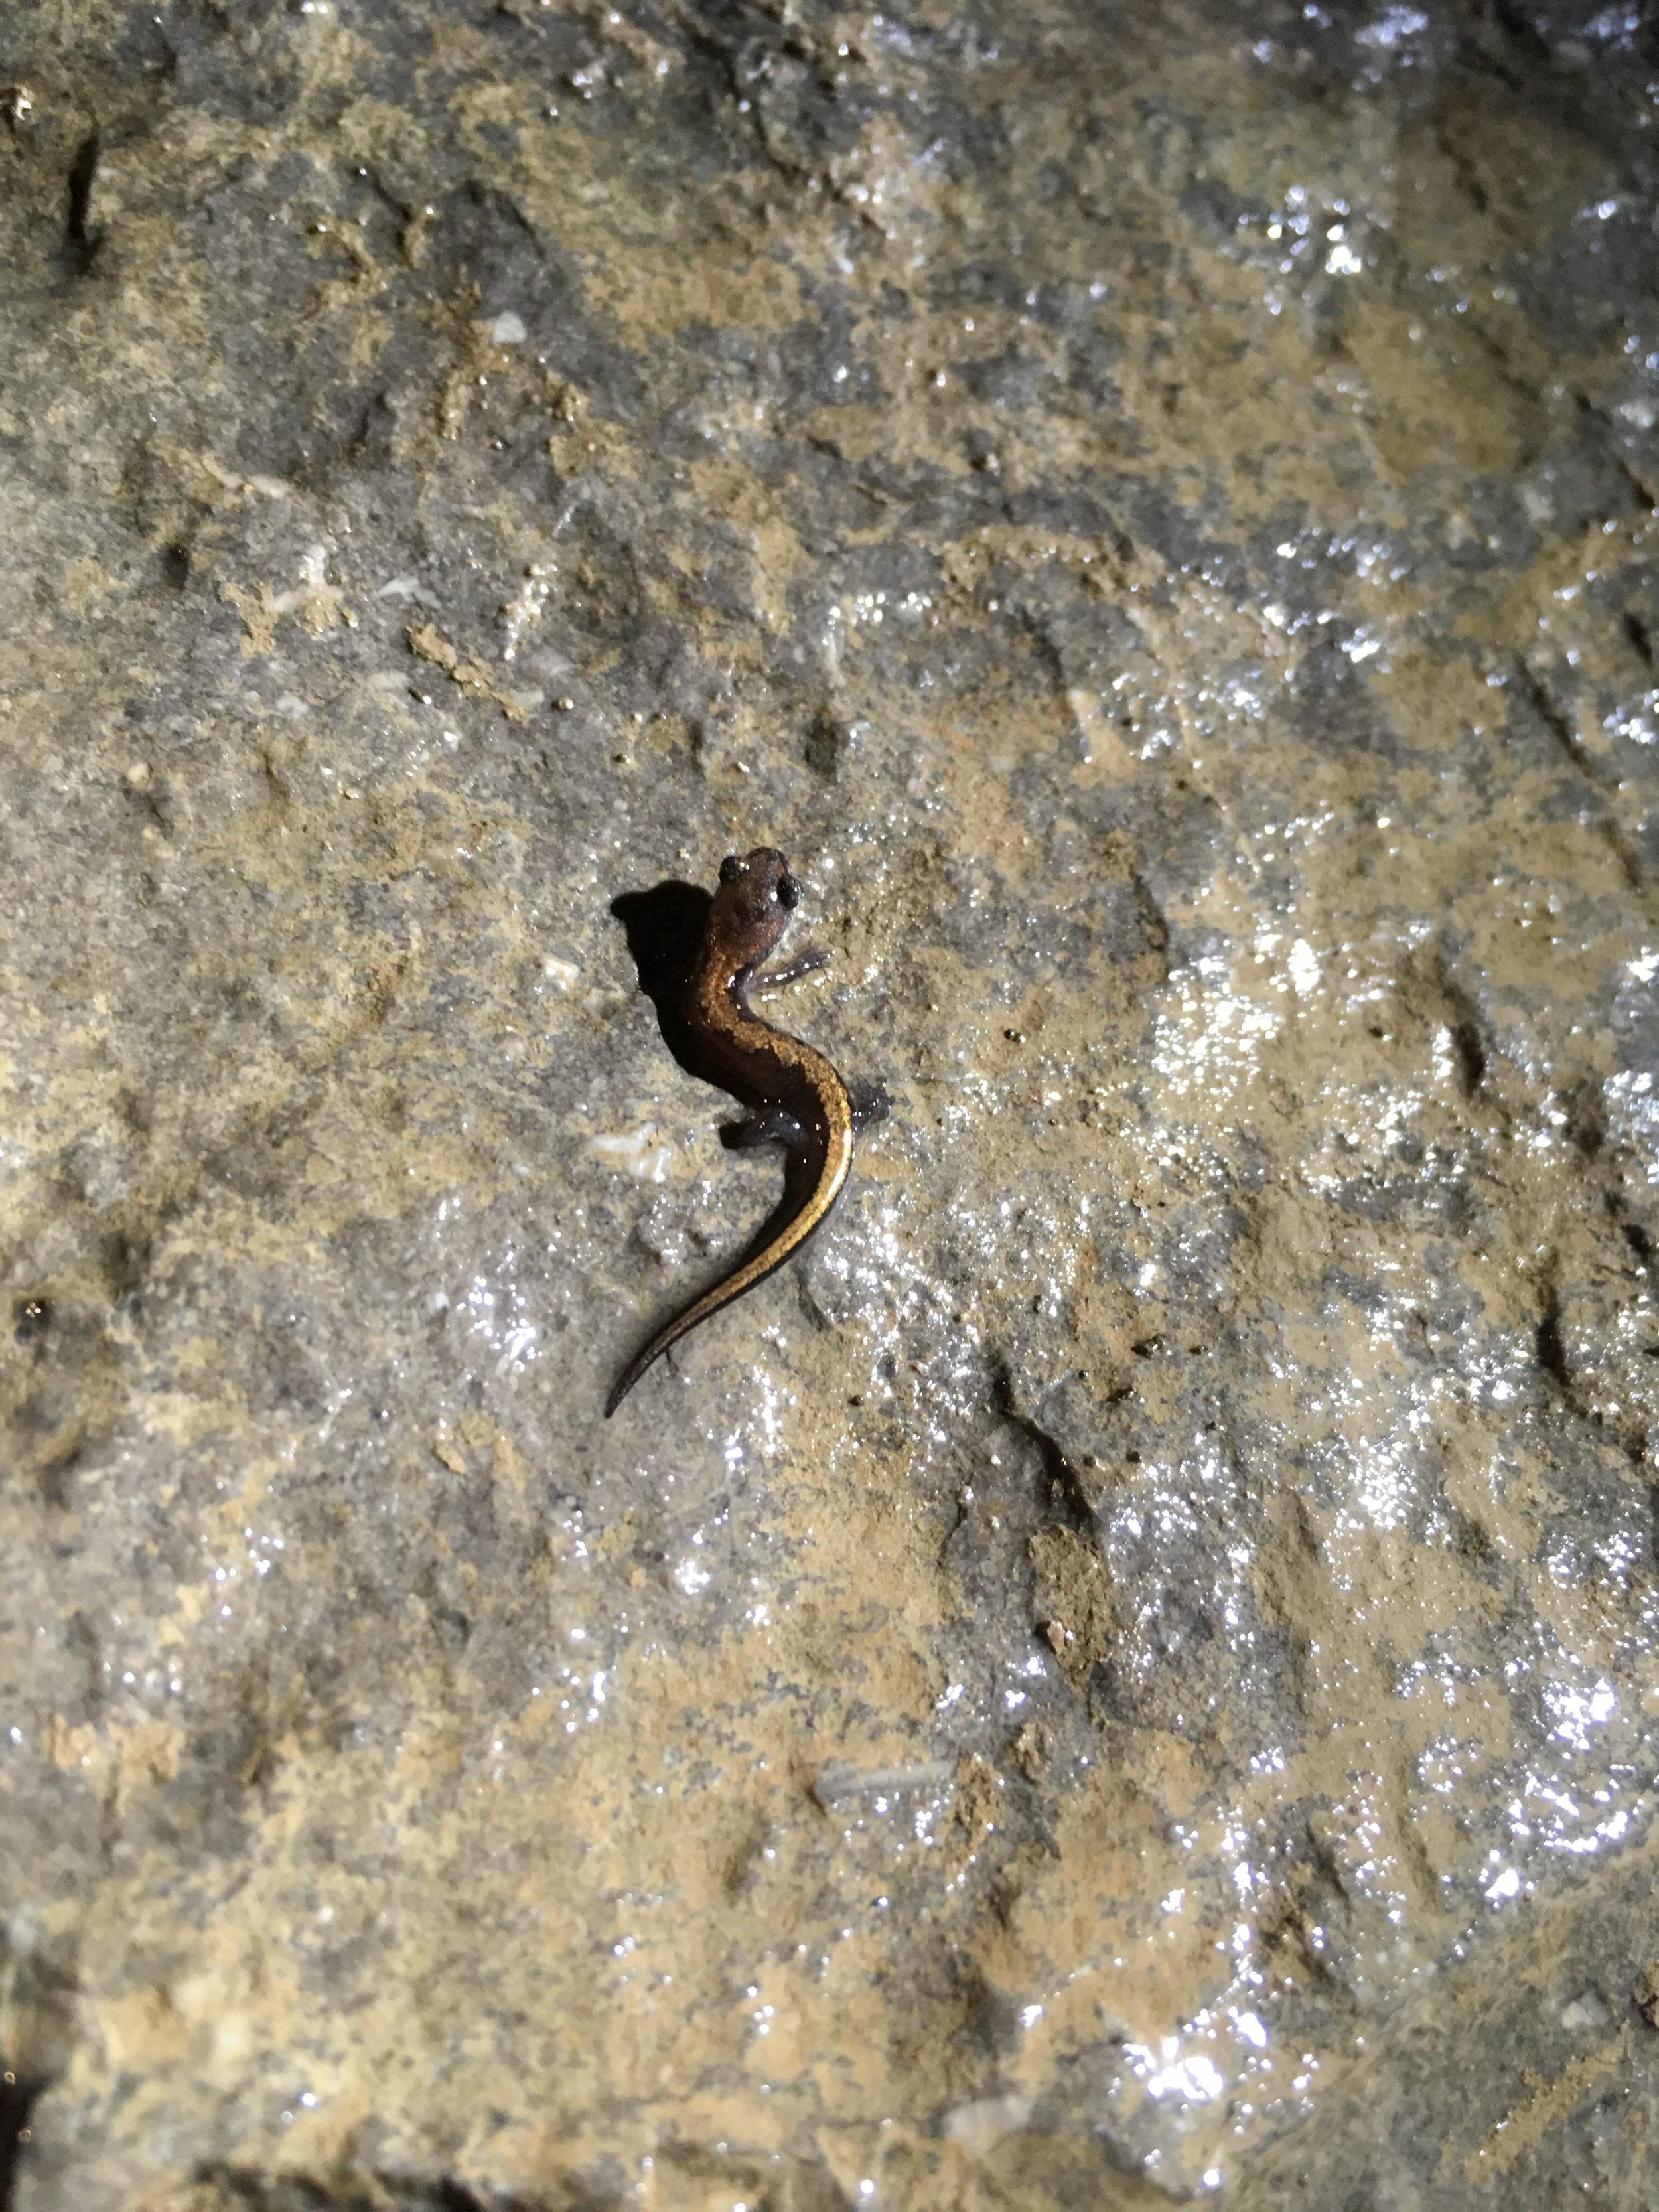 Salamander, November 6, 2018